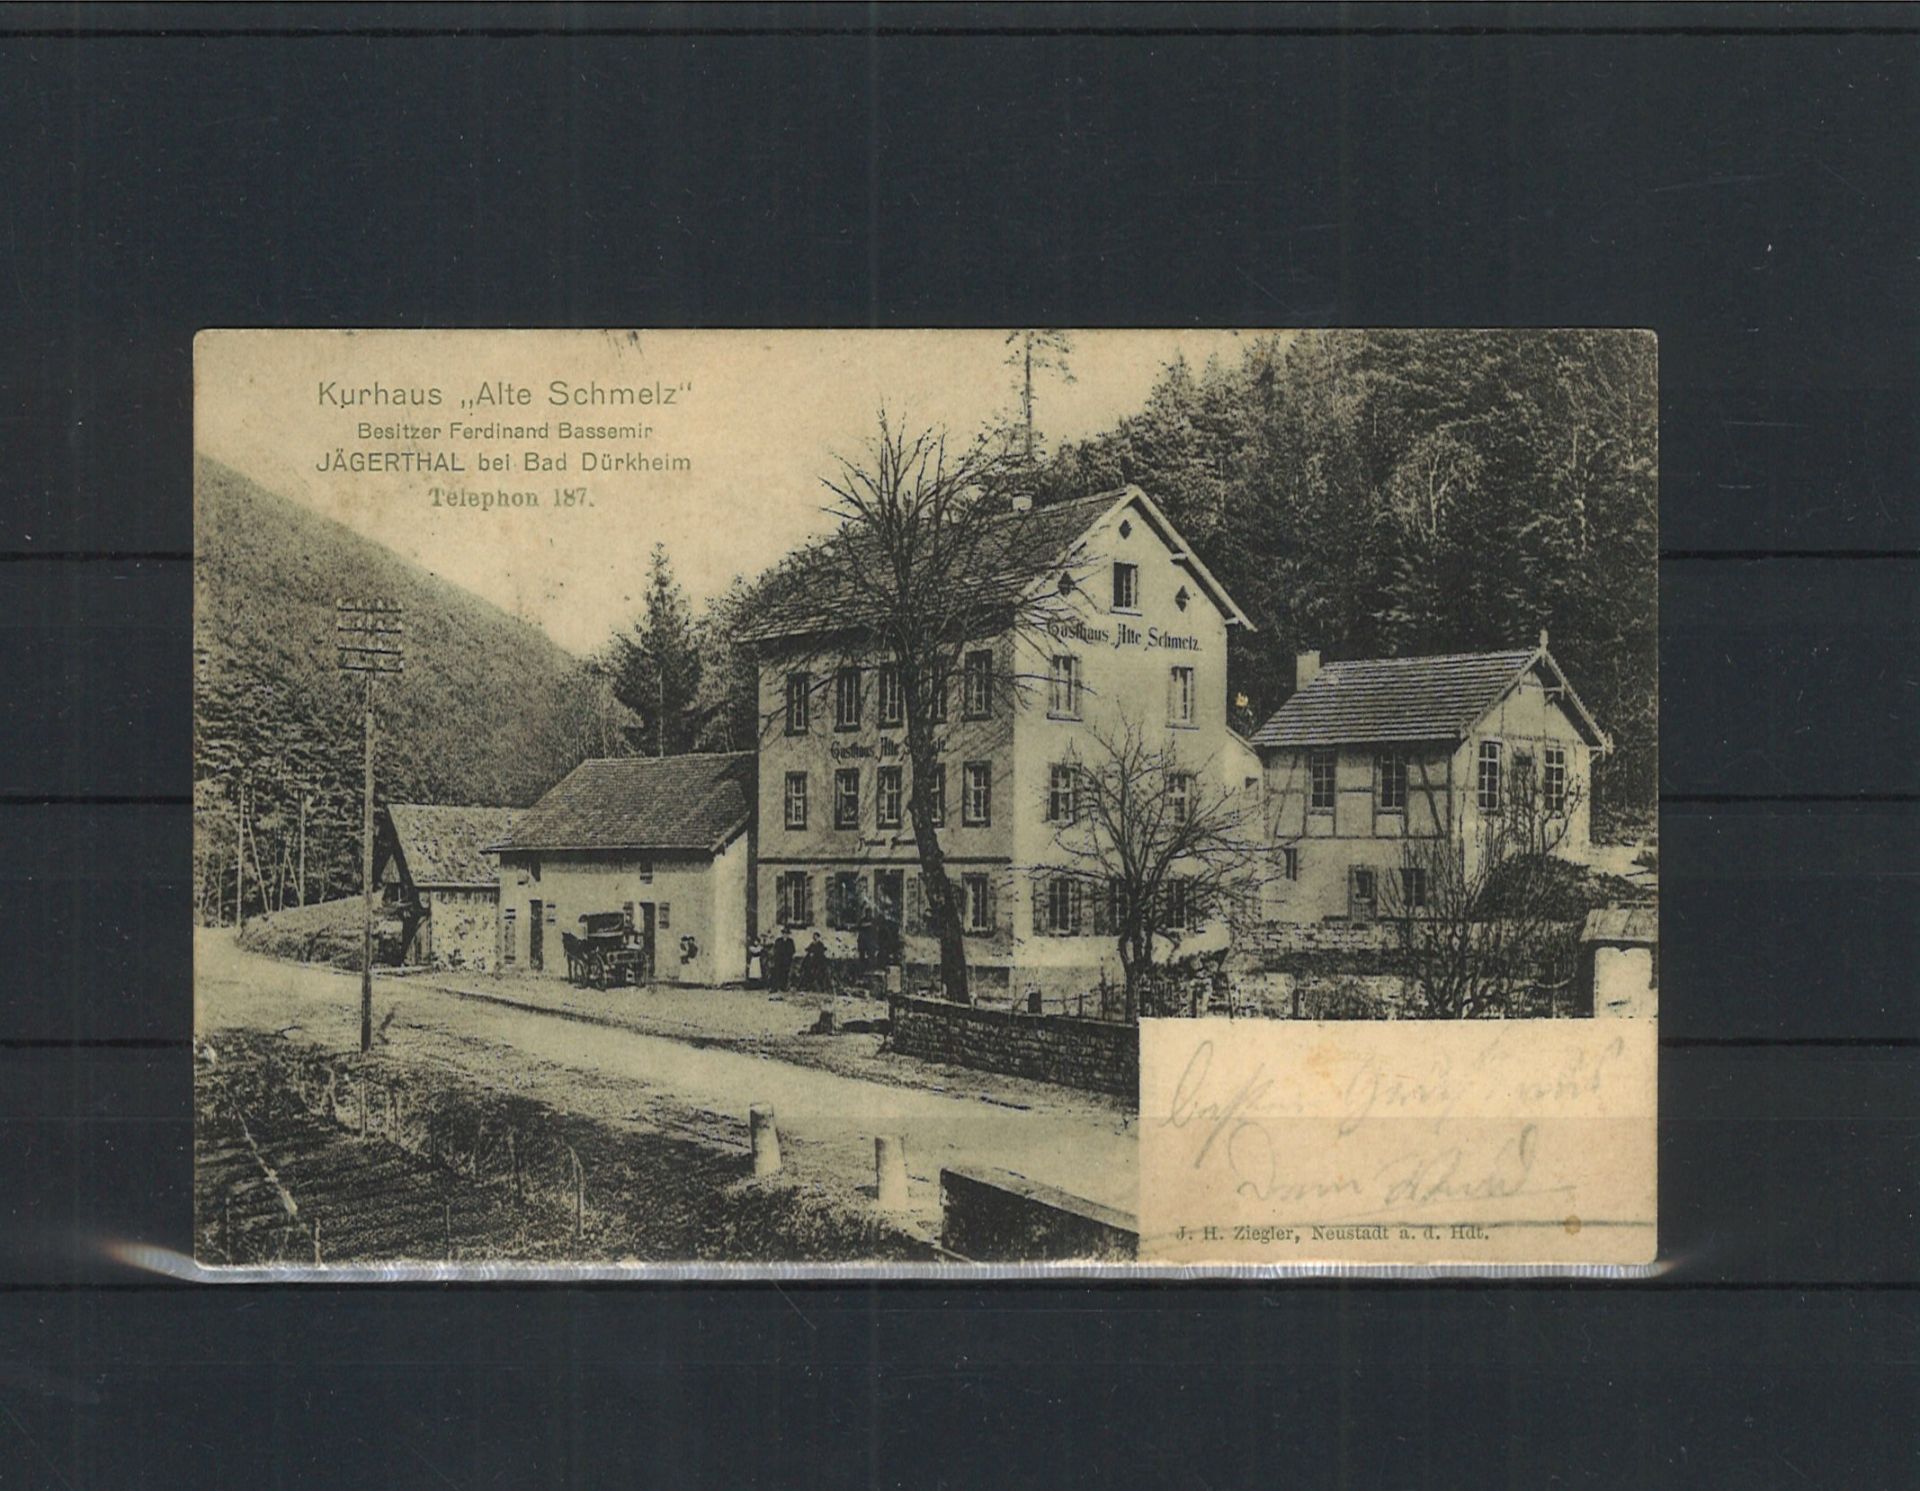 Postkarte Kurhaus "Alte Schmelz" Besitzer Ferdinand Bassemir Jägerthal bei Bad Dürkheim, gelaufen